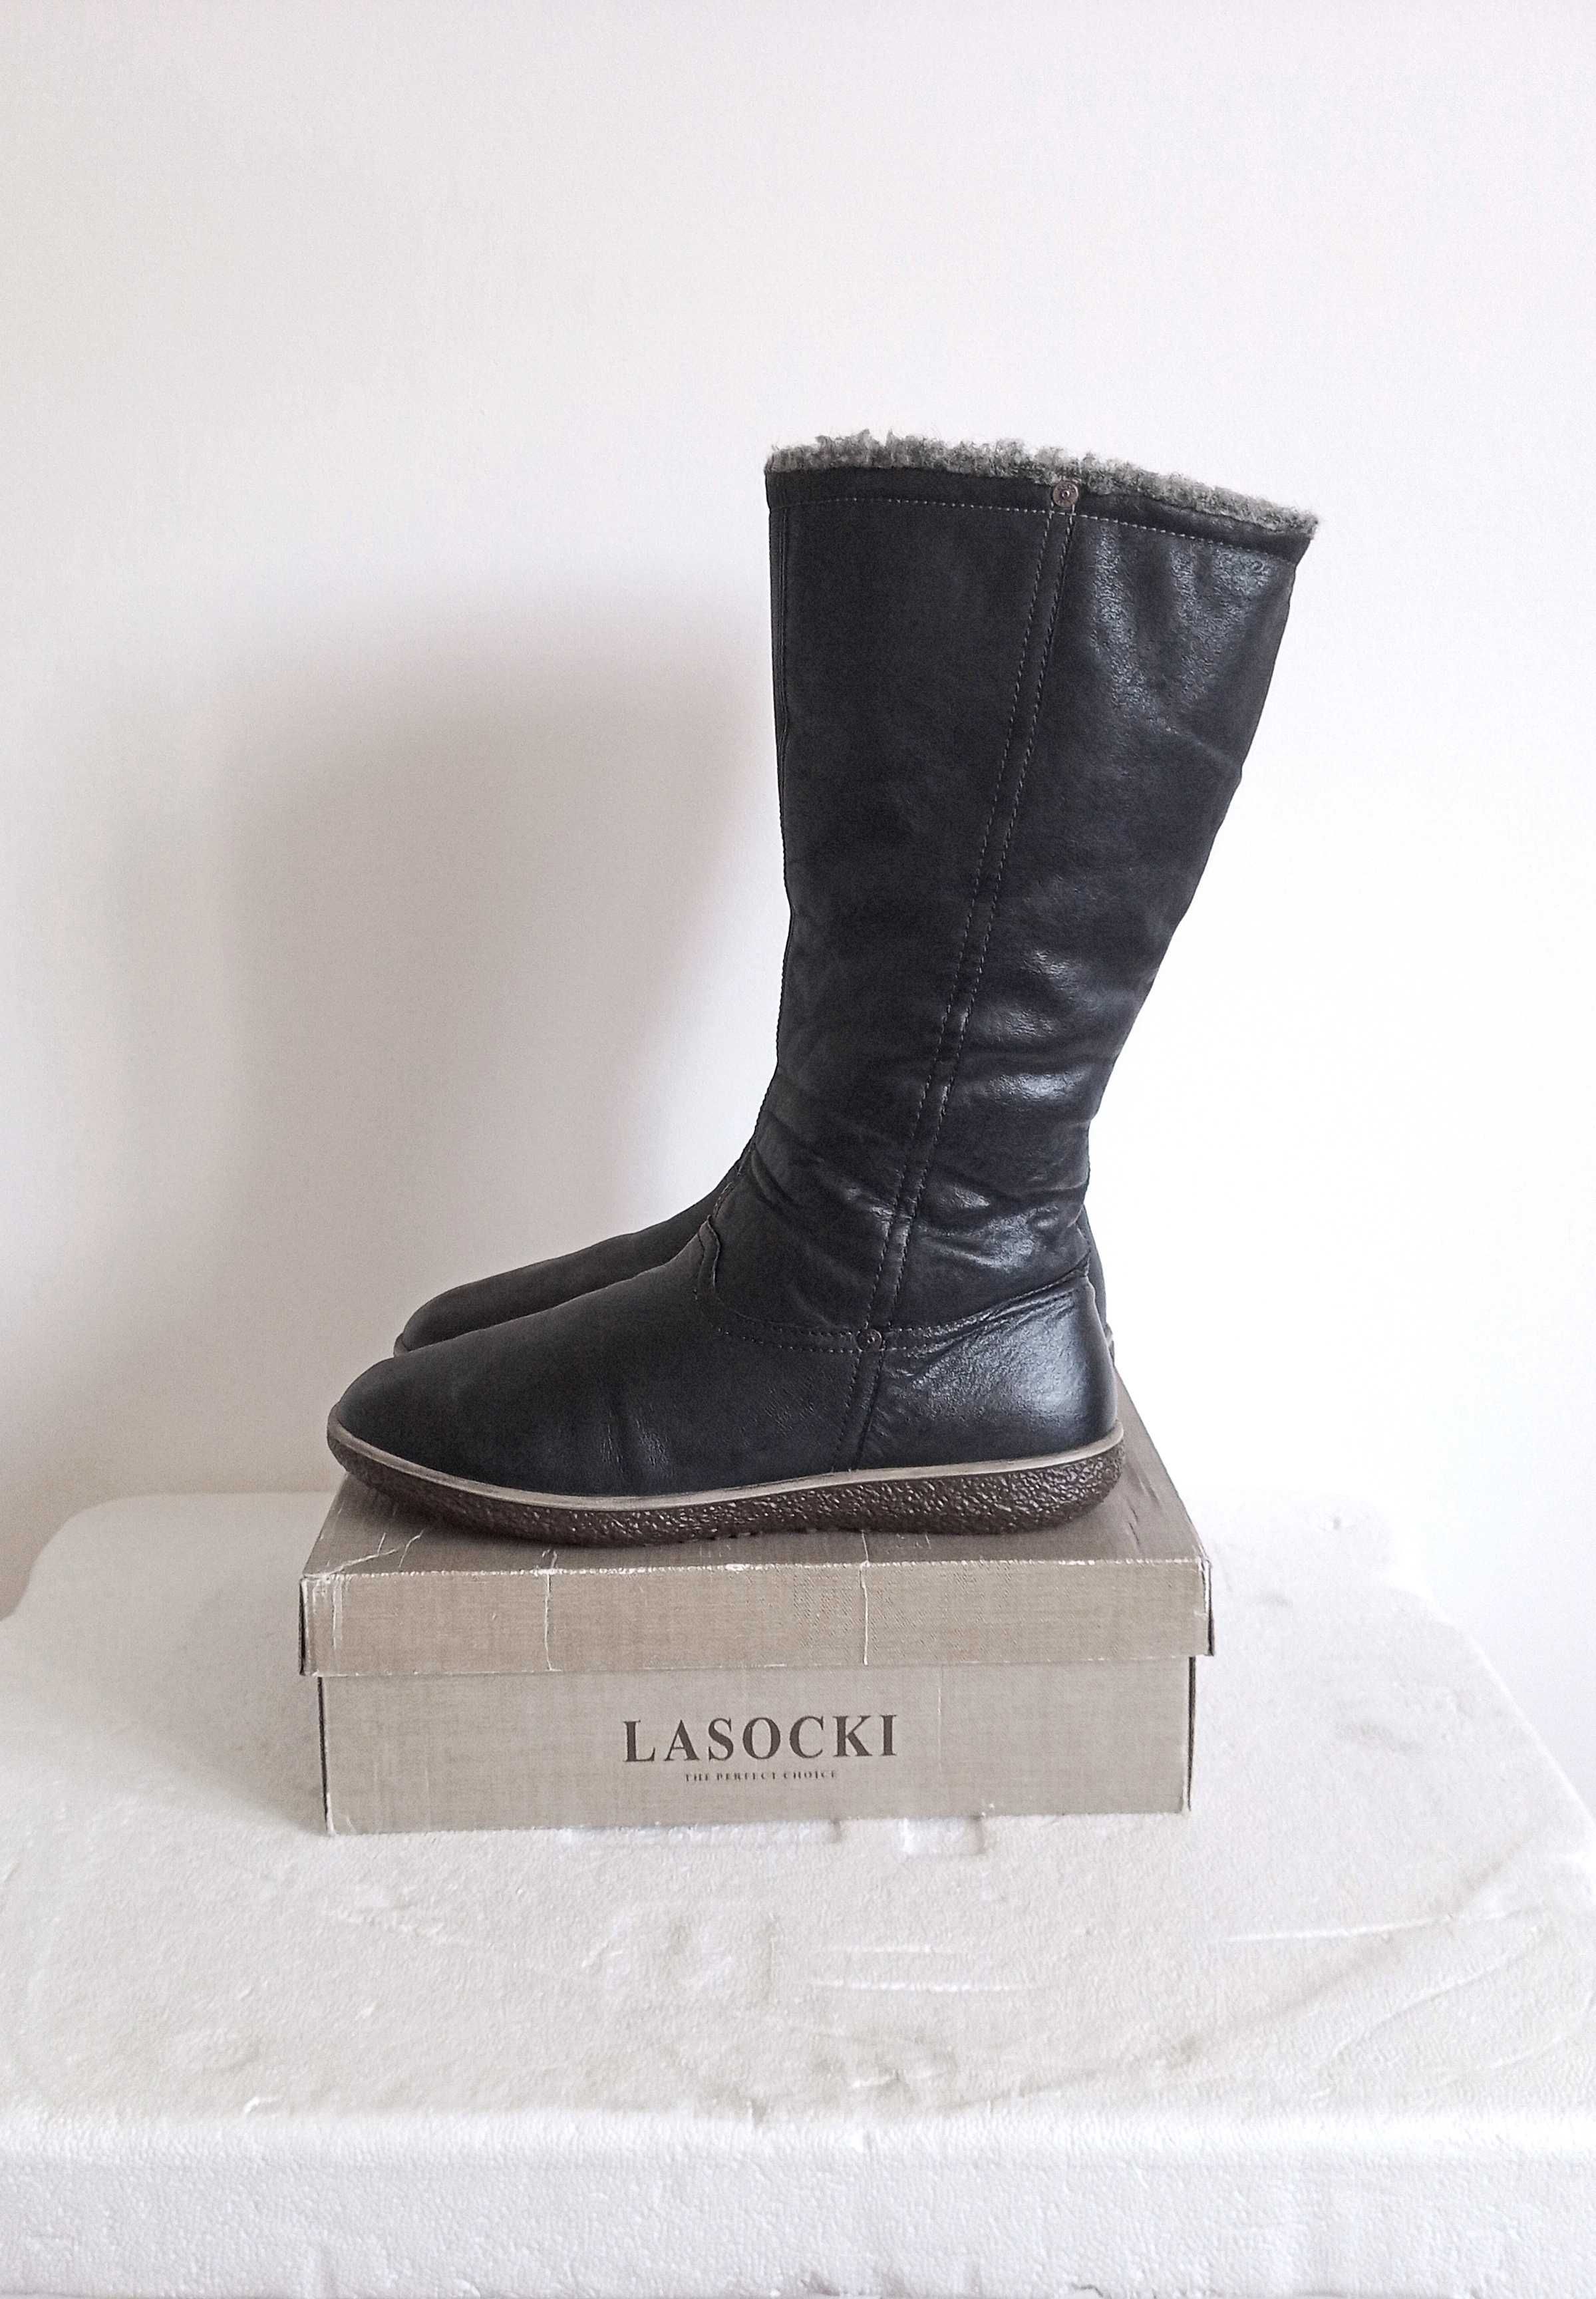 Жіночі зимові чоботи ECCO р.41, р.42 і Lasocki р.41 на широку стопу